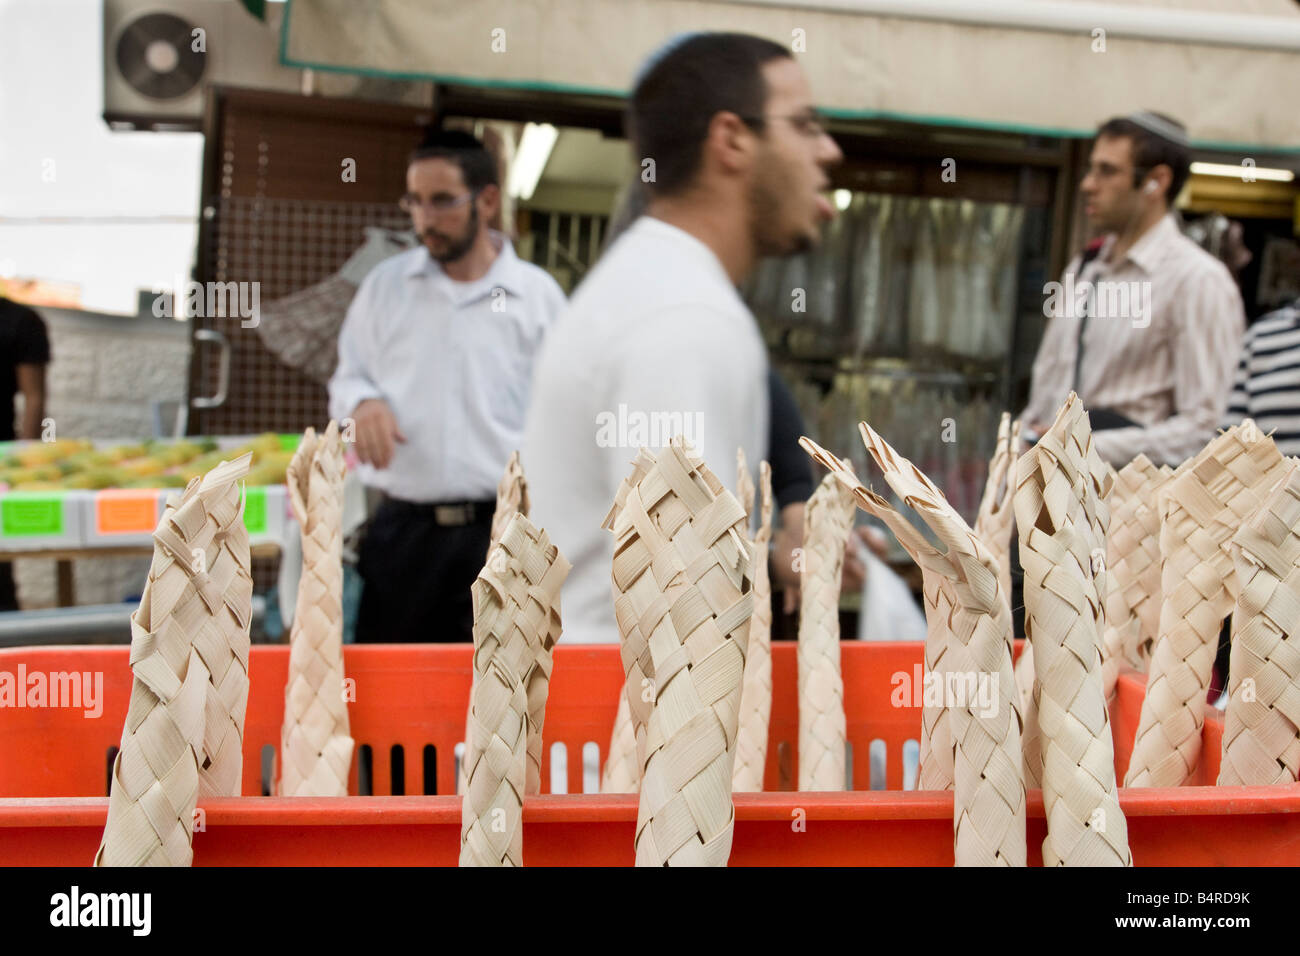 Jérusalem, Israël. Les gens passent par des feuilles de palmier sèches entrelacées, utilisé dans un rituel lors de la fête juive de Sukot. Banque D'Images